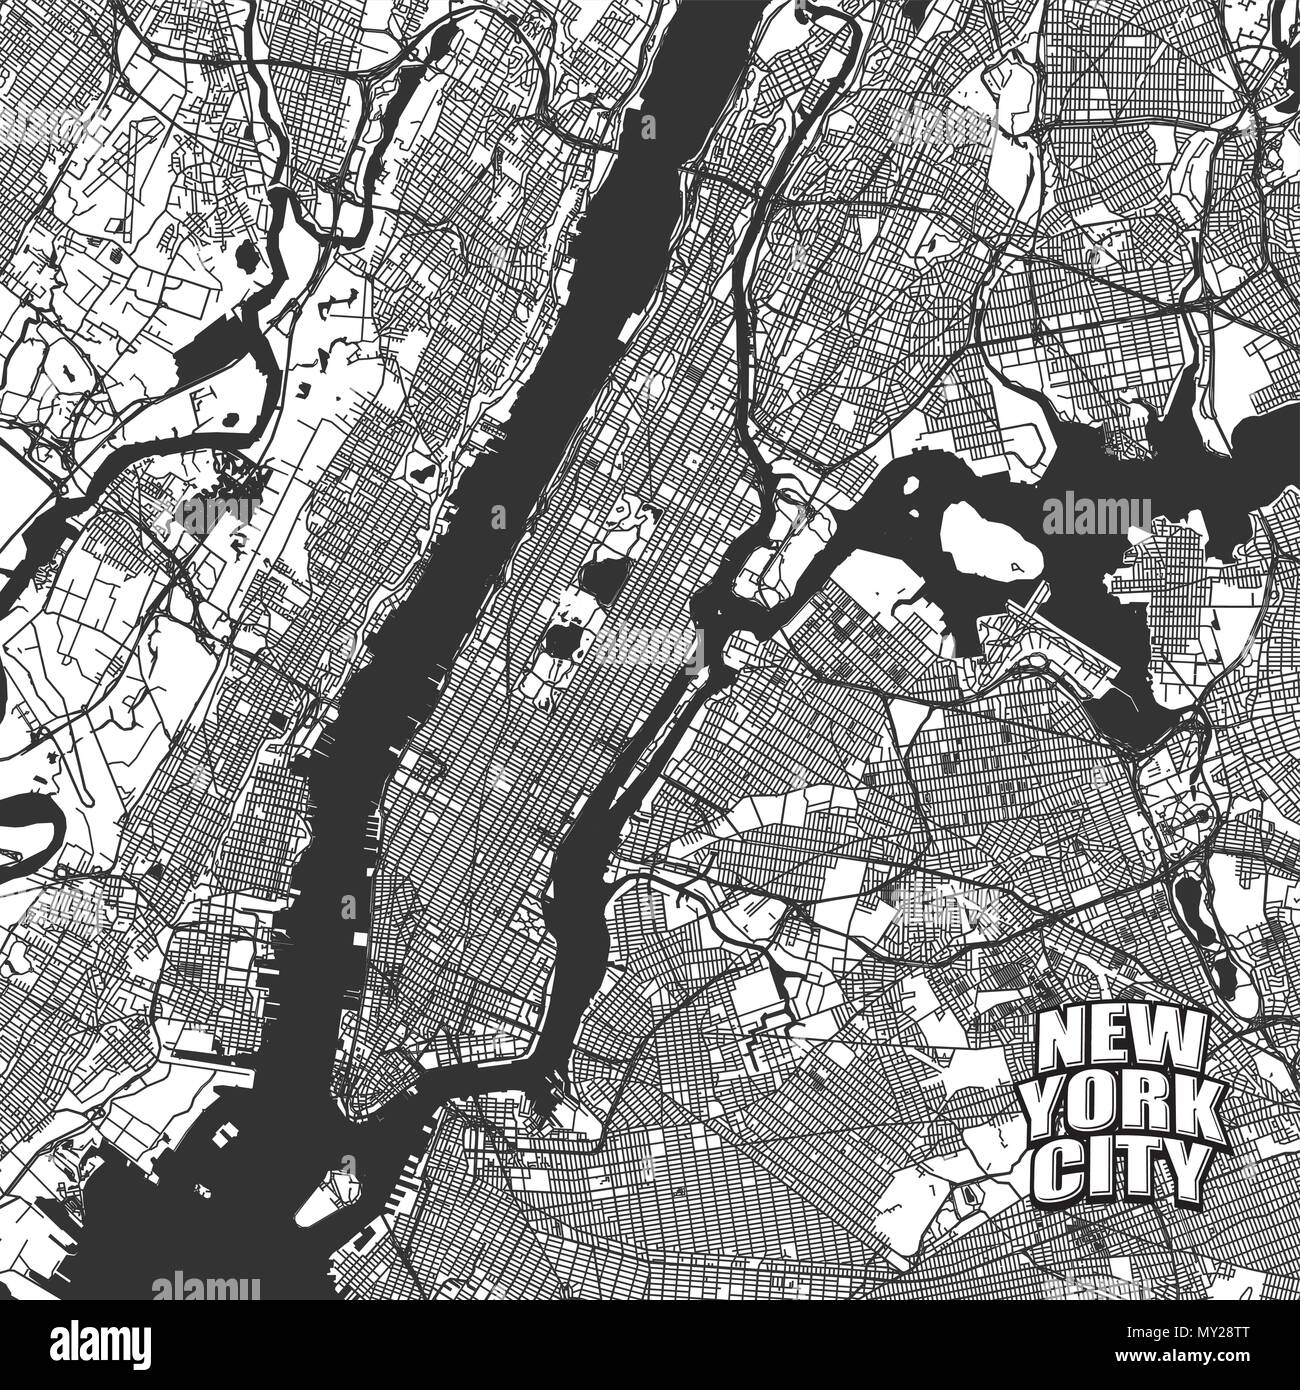 New York City mappa vettoriale. Molto scrupoloso versione senza ponti e nomi. Il logo di NYC raggruppate seperatly. Illustrazione Vettoriale